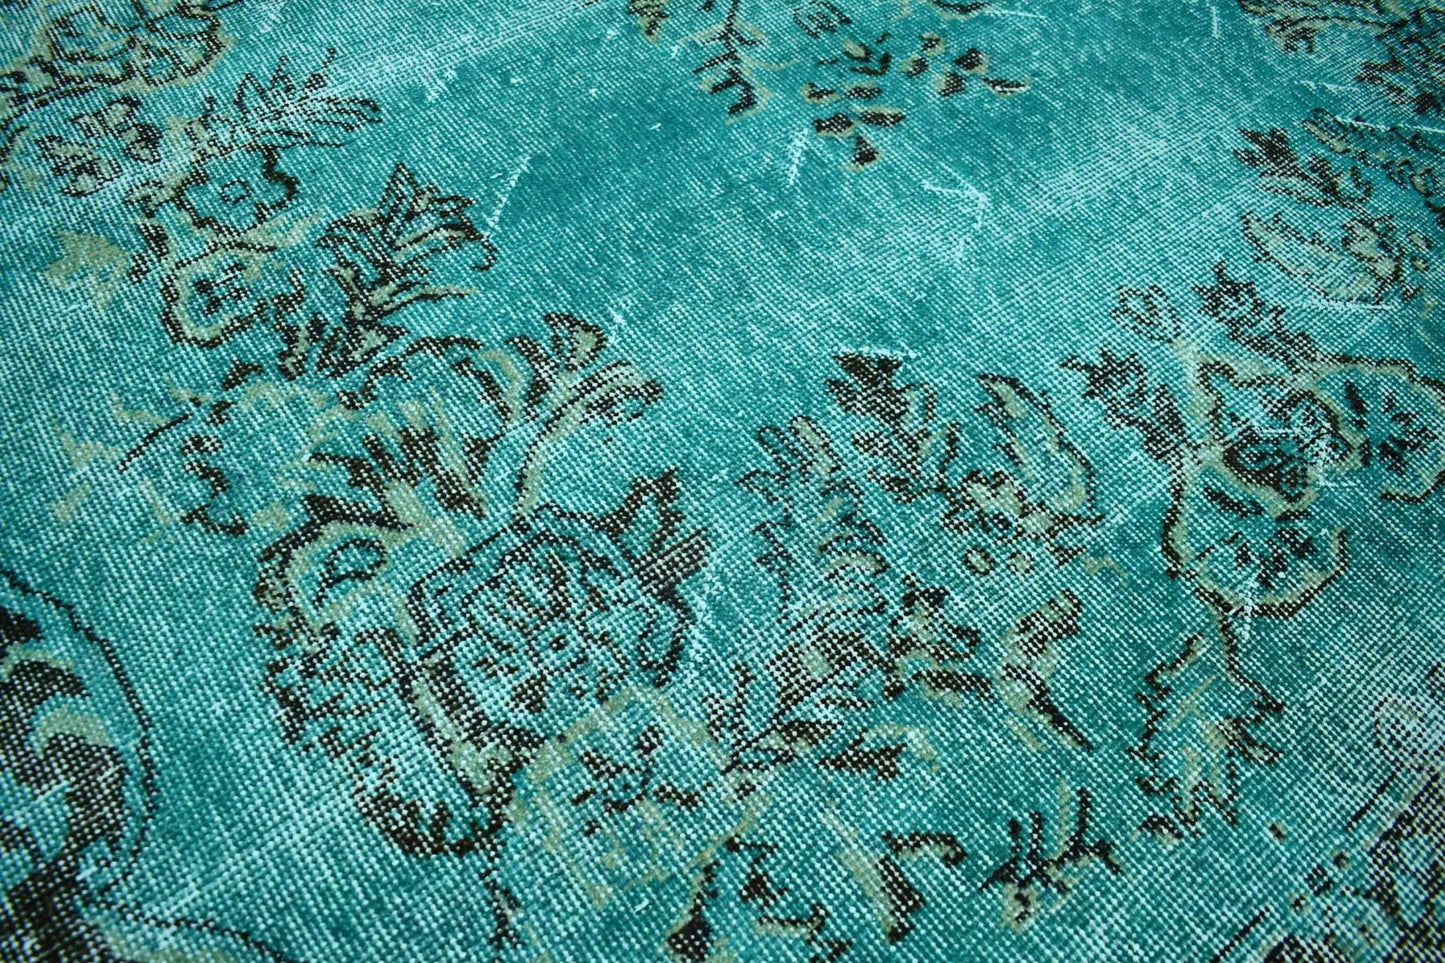 Turquoise vintage vloerkleed - D553 - Lavinta